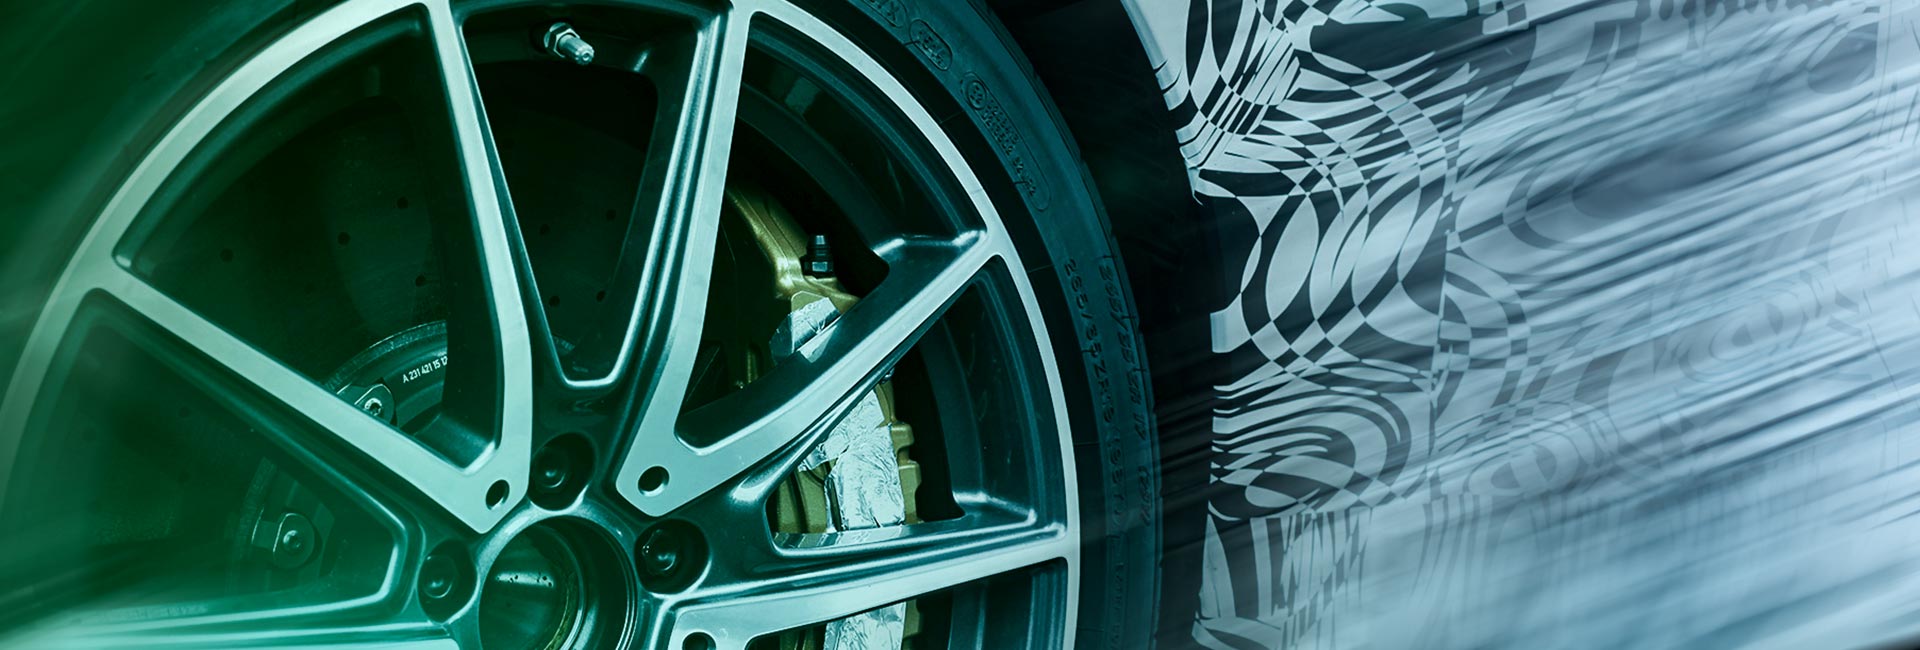 Formel D dirige centros de pruebas de vehículos para ofrecer soluciones rentables a fabricantes de automóviles en materia de pruebas de vehículos.